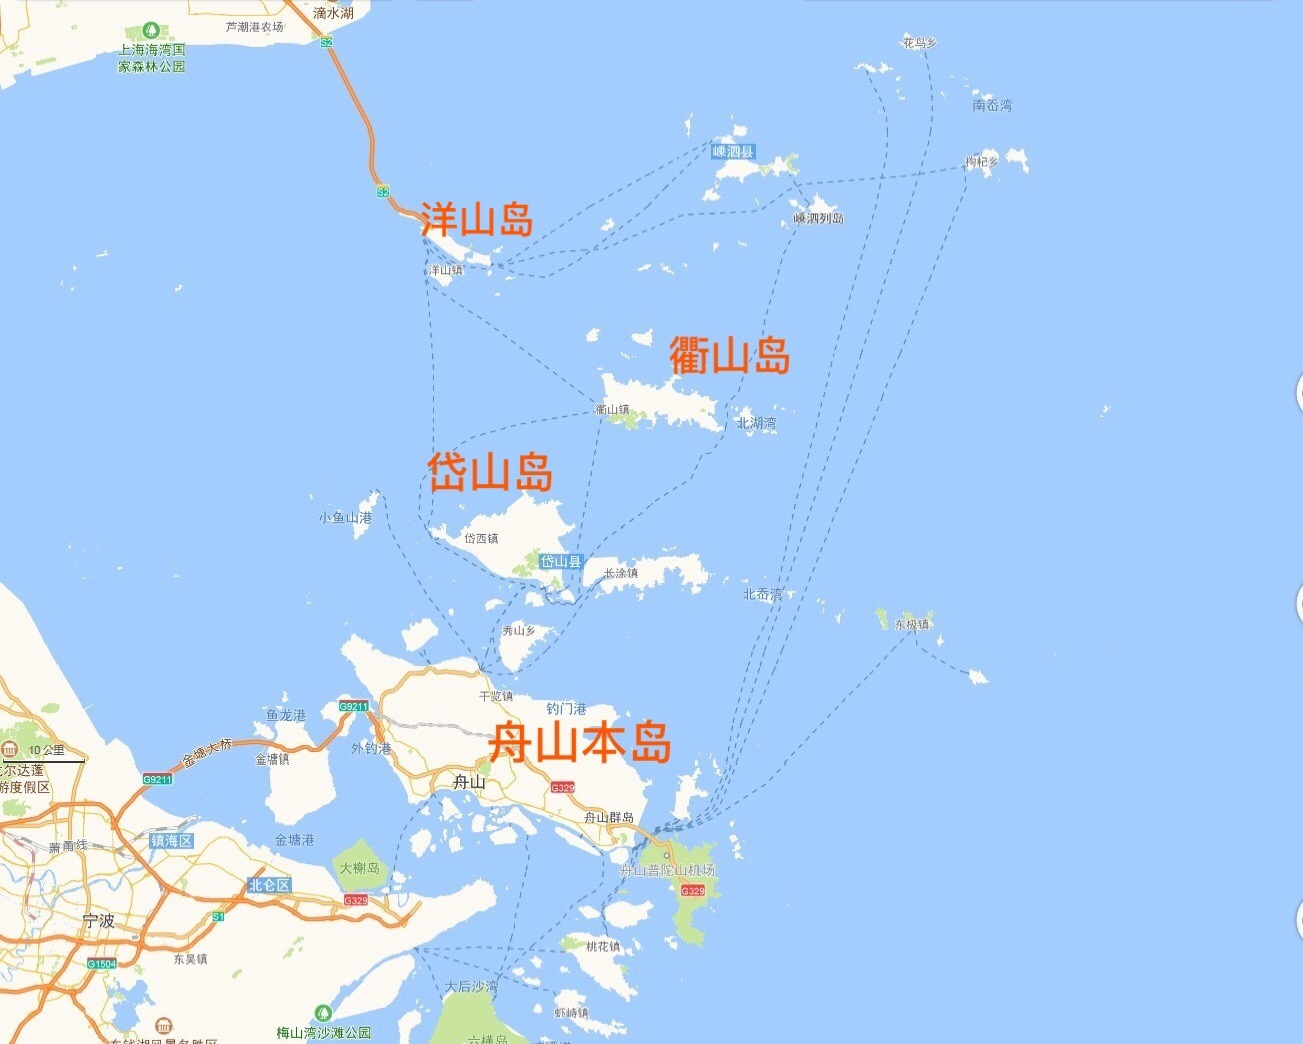 坐标方位                      衢山岛又称大衢山岛,是浙江省舟山市